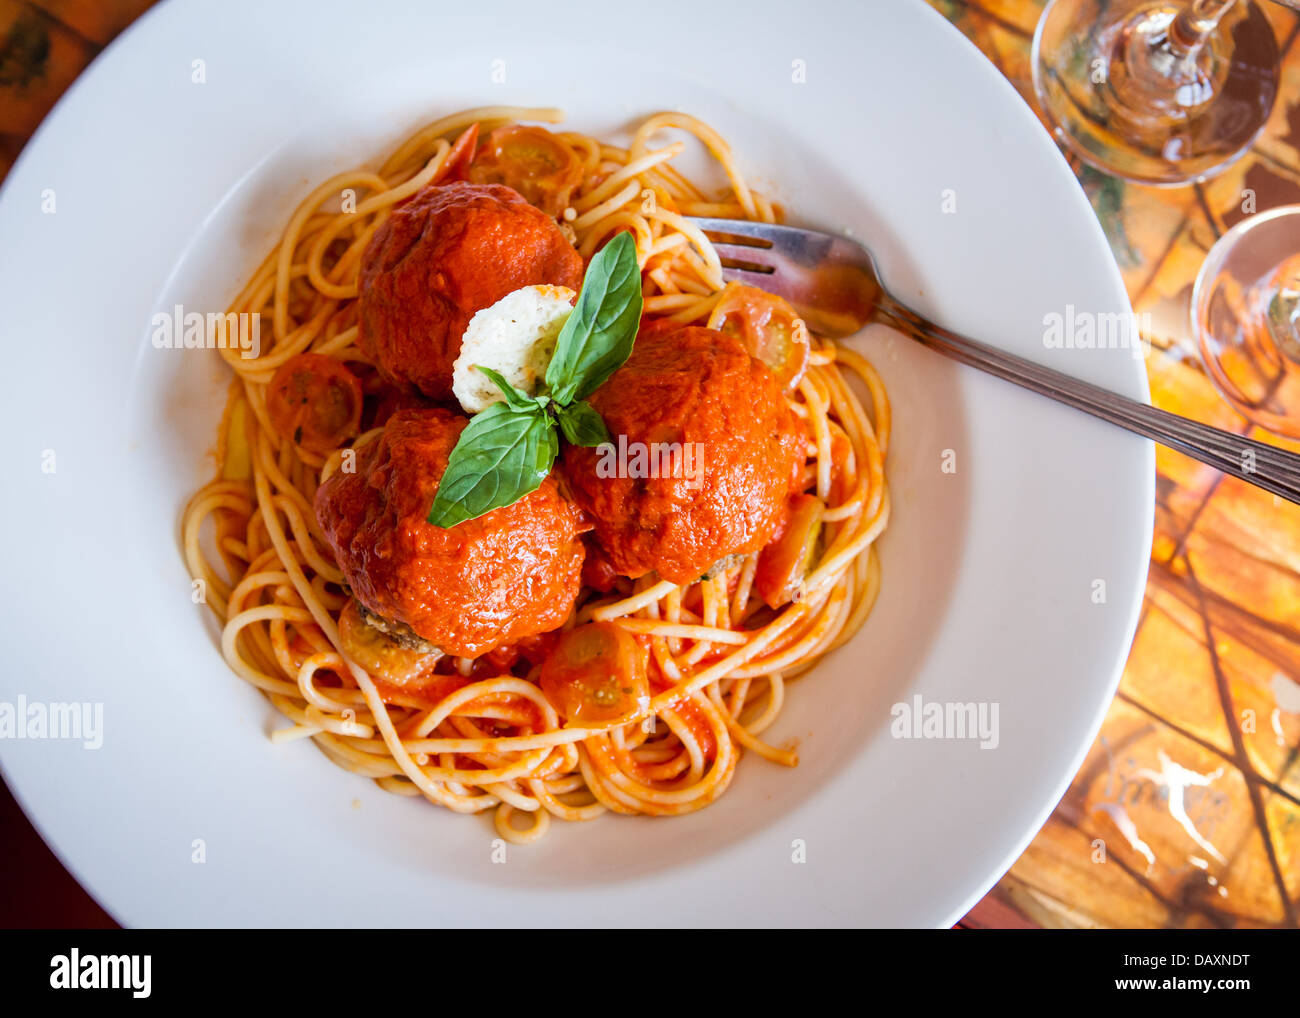 Spaghetti und Fleischbällchen italienisches Essen Stockfoto